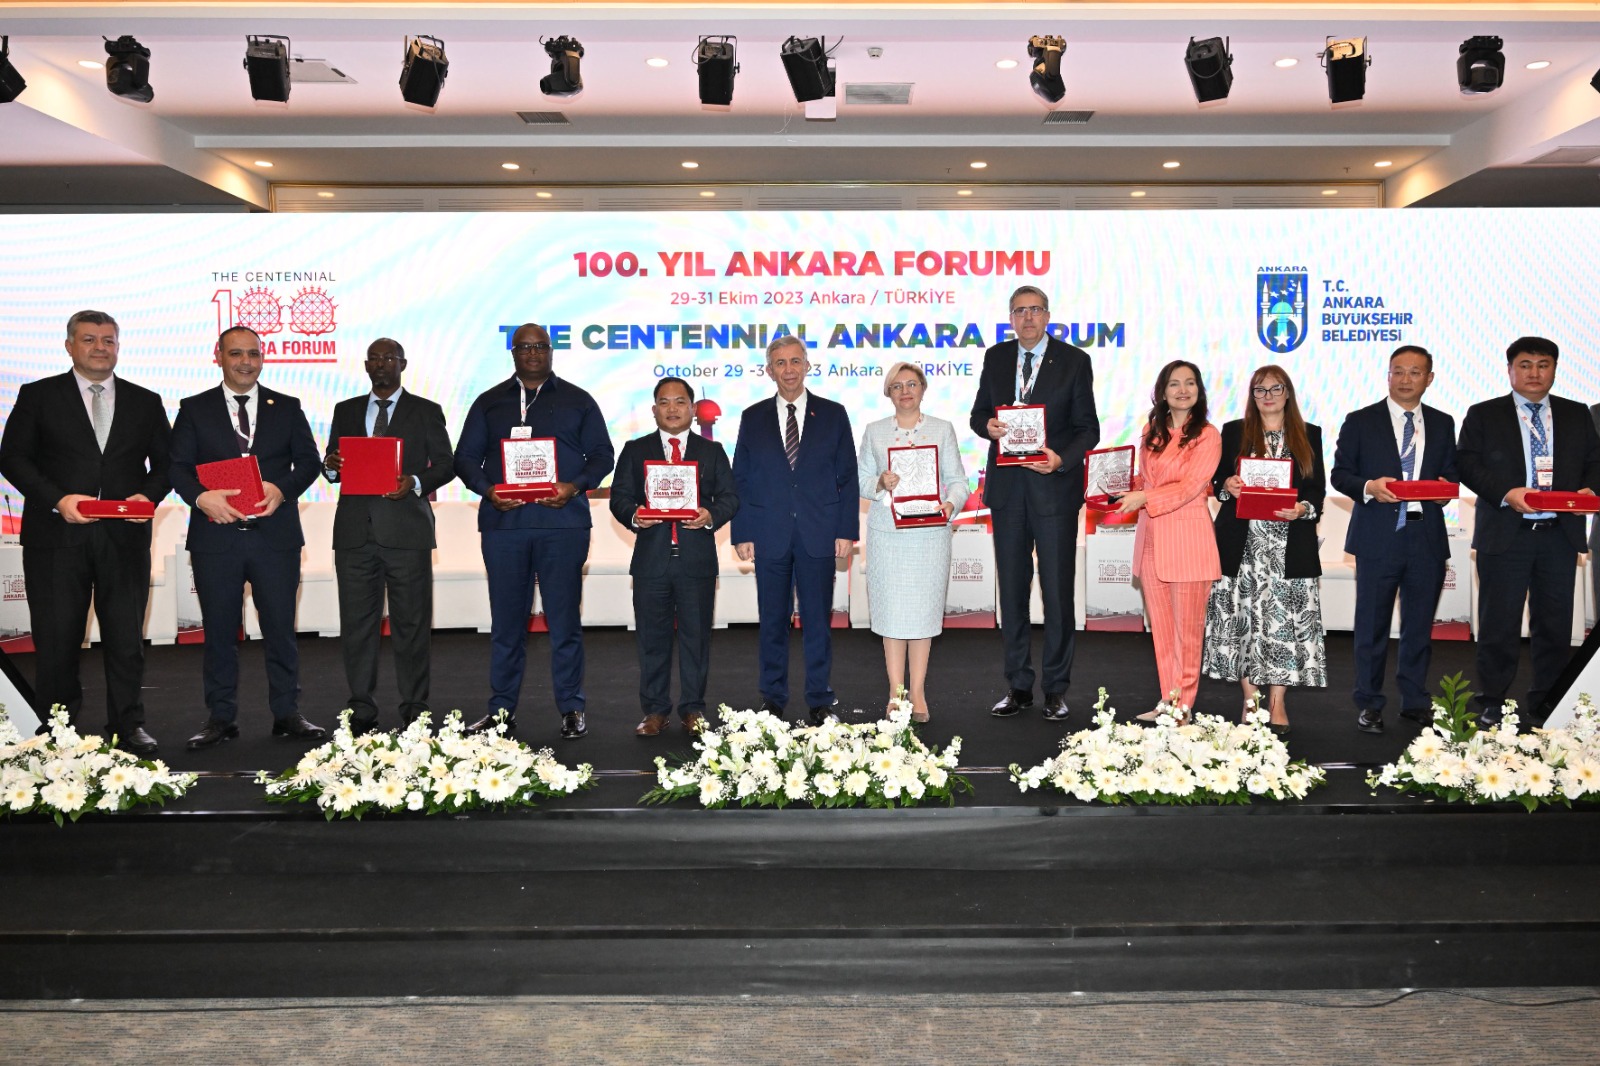 Başkan Harmancı 100. Yıl Ankara Şehircilik Forumu’nda vurguladı: “Başkentlere özel statü şart'